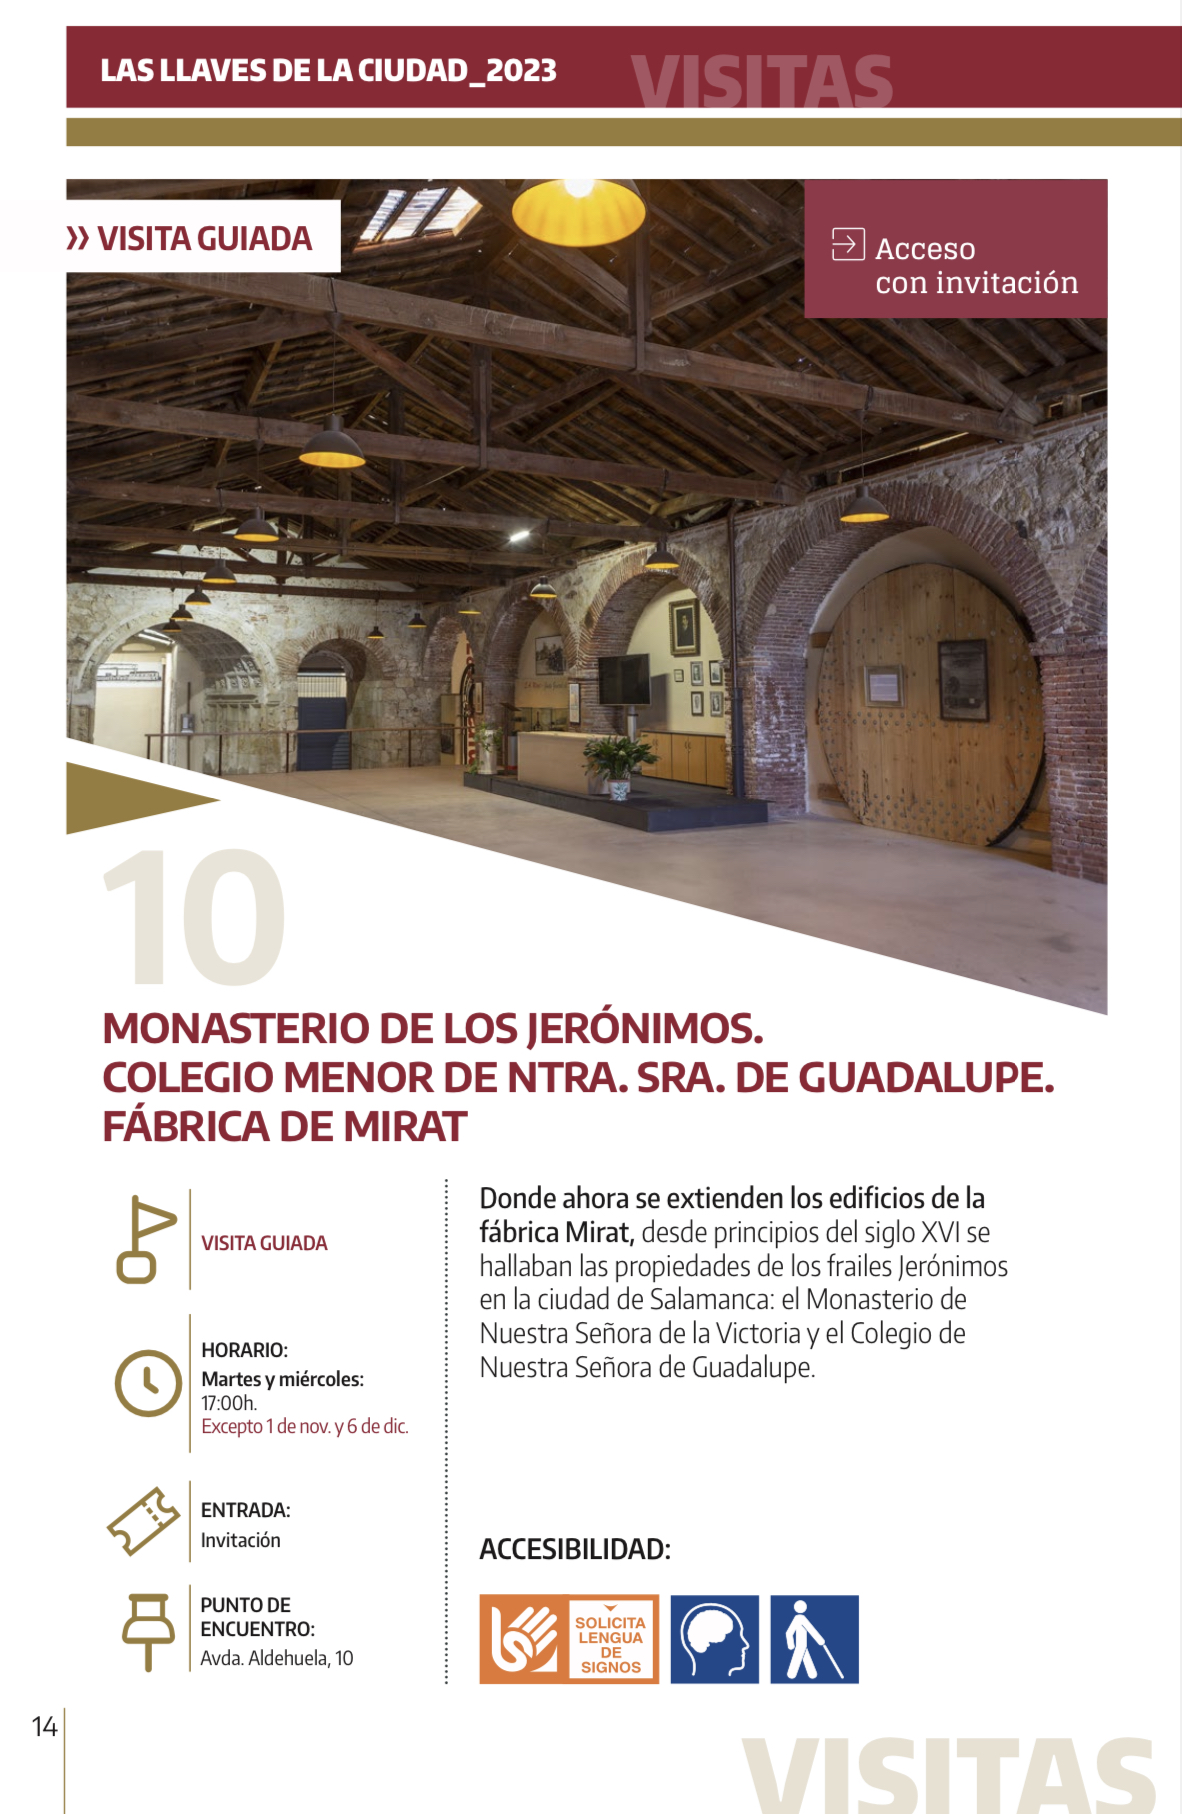 VISITA GUIADA - LAS LLAVES DE LA CIUDAD - Monasterio de los Jerónimos - Fábrica de Mirat